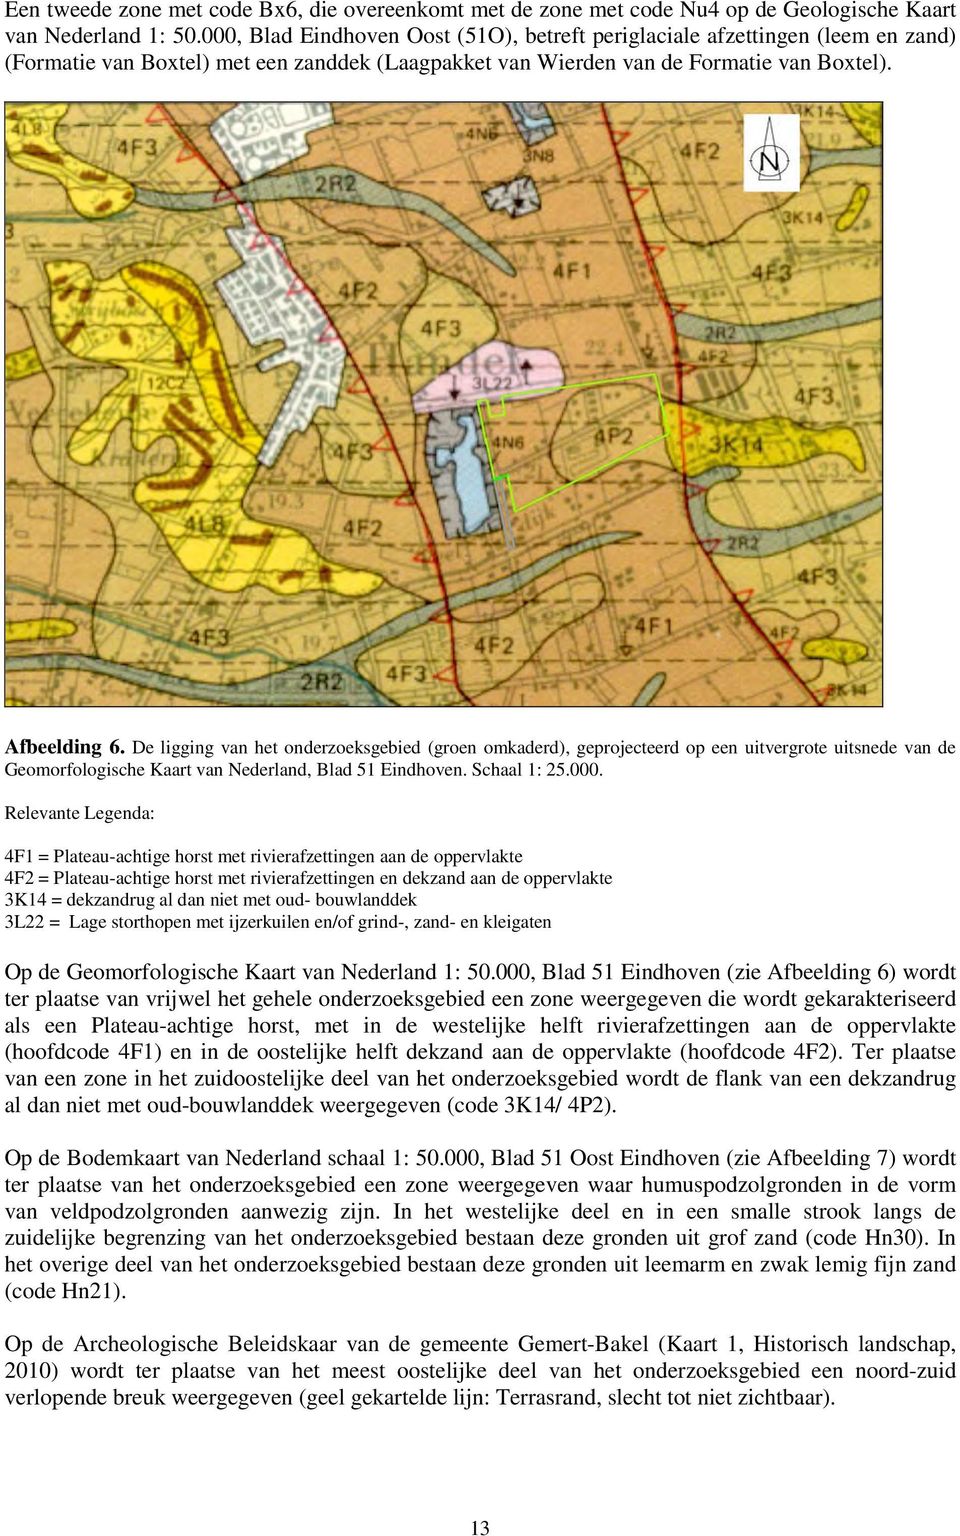 De ligging van het onderzoeksgebied (groen omkaderd), geprojecteerd op een uitvergrote uitsnede van de Geomorfologische Kaart van Nederland, Blad 51 Eindhoven. Schaal 1: 25.000.